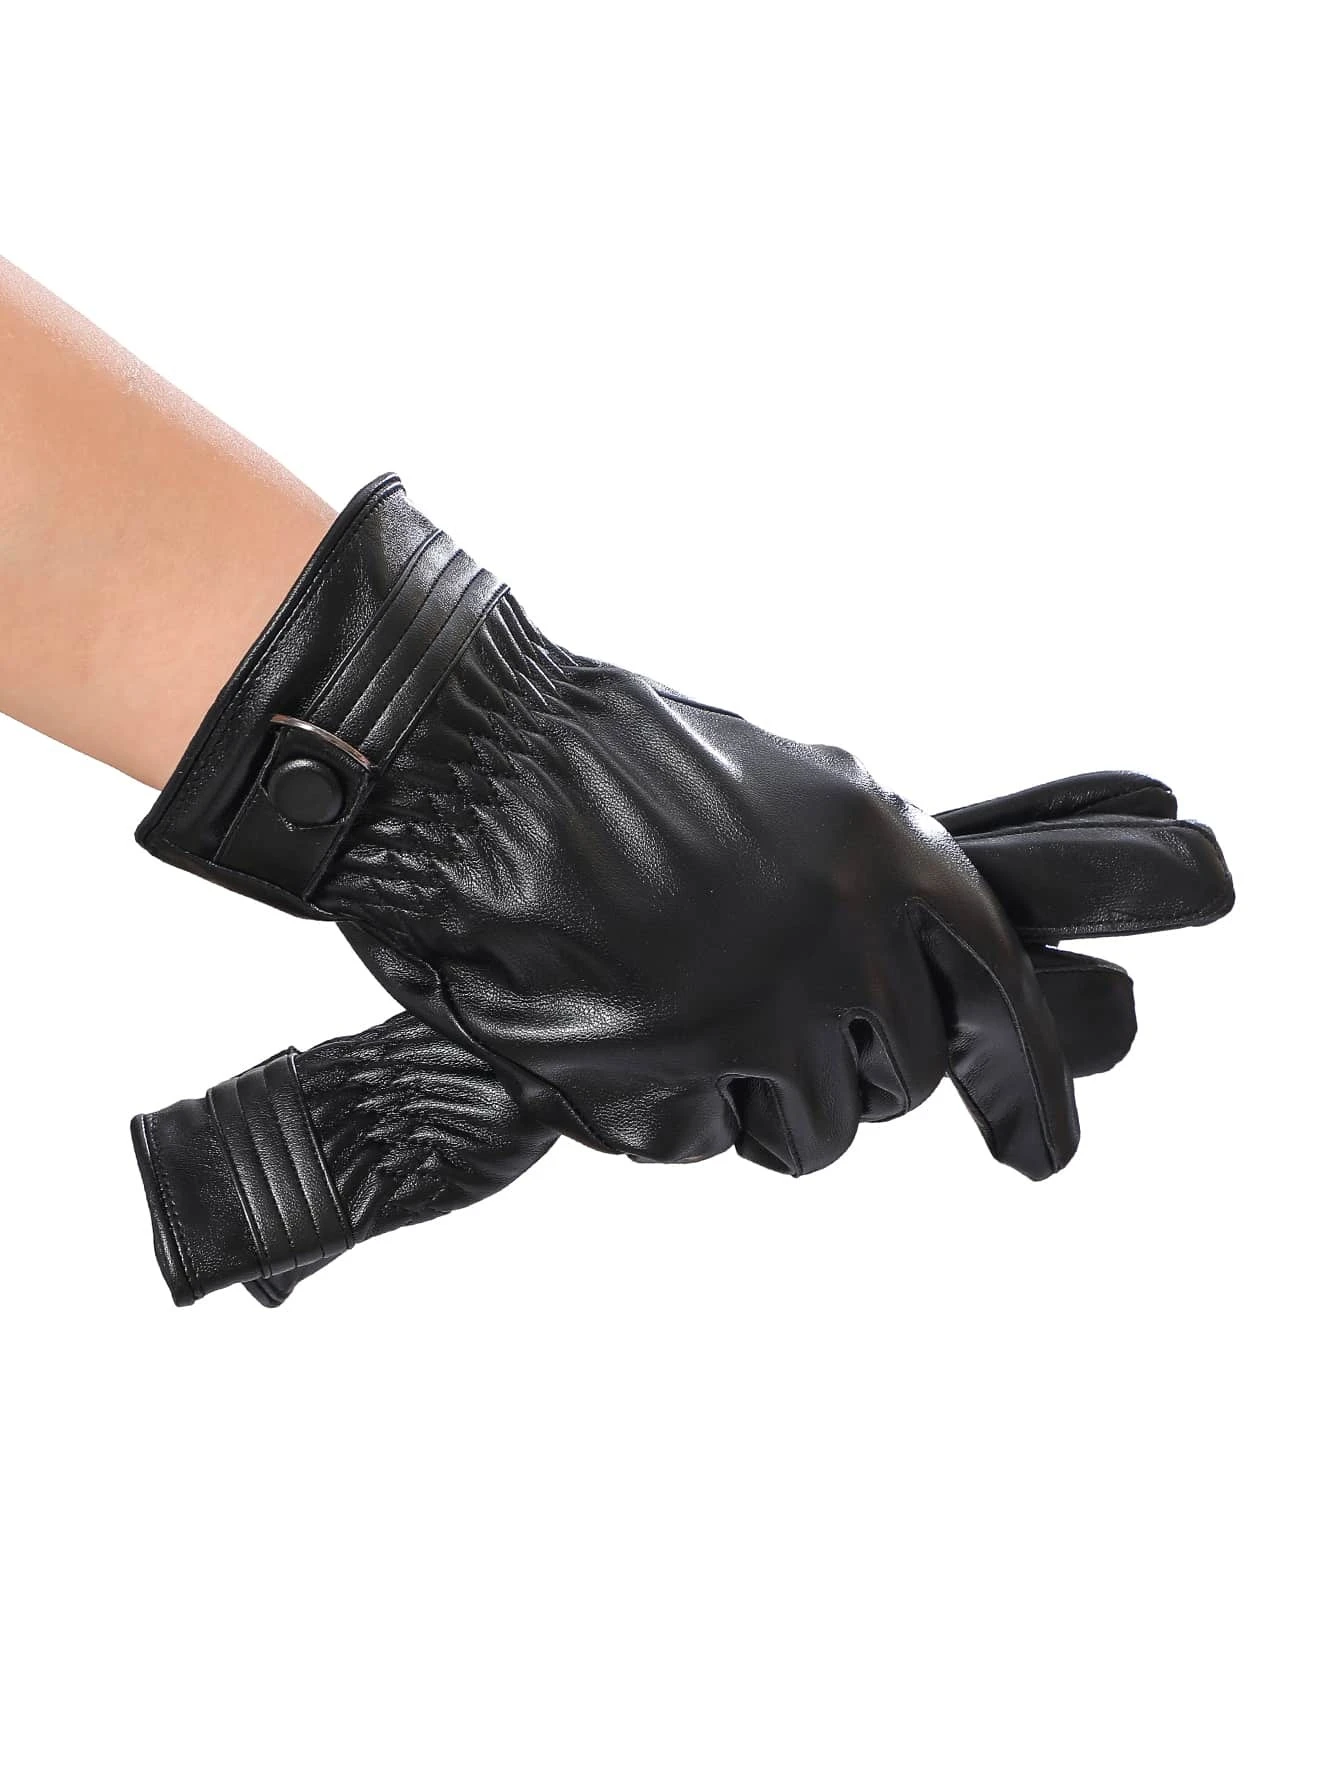 Ανδρικά δερμάτινα γάντια μαύρα με touchscreen